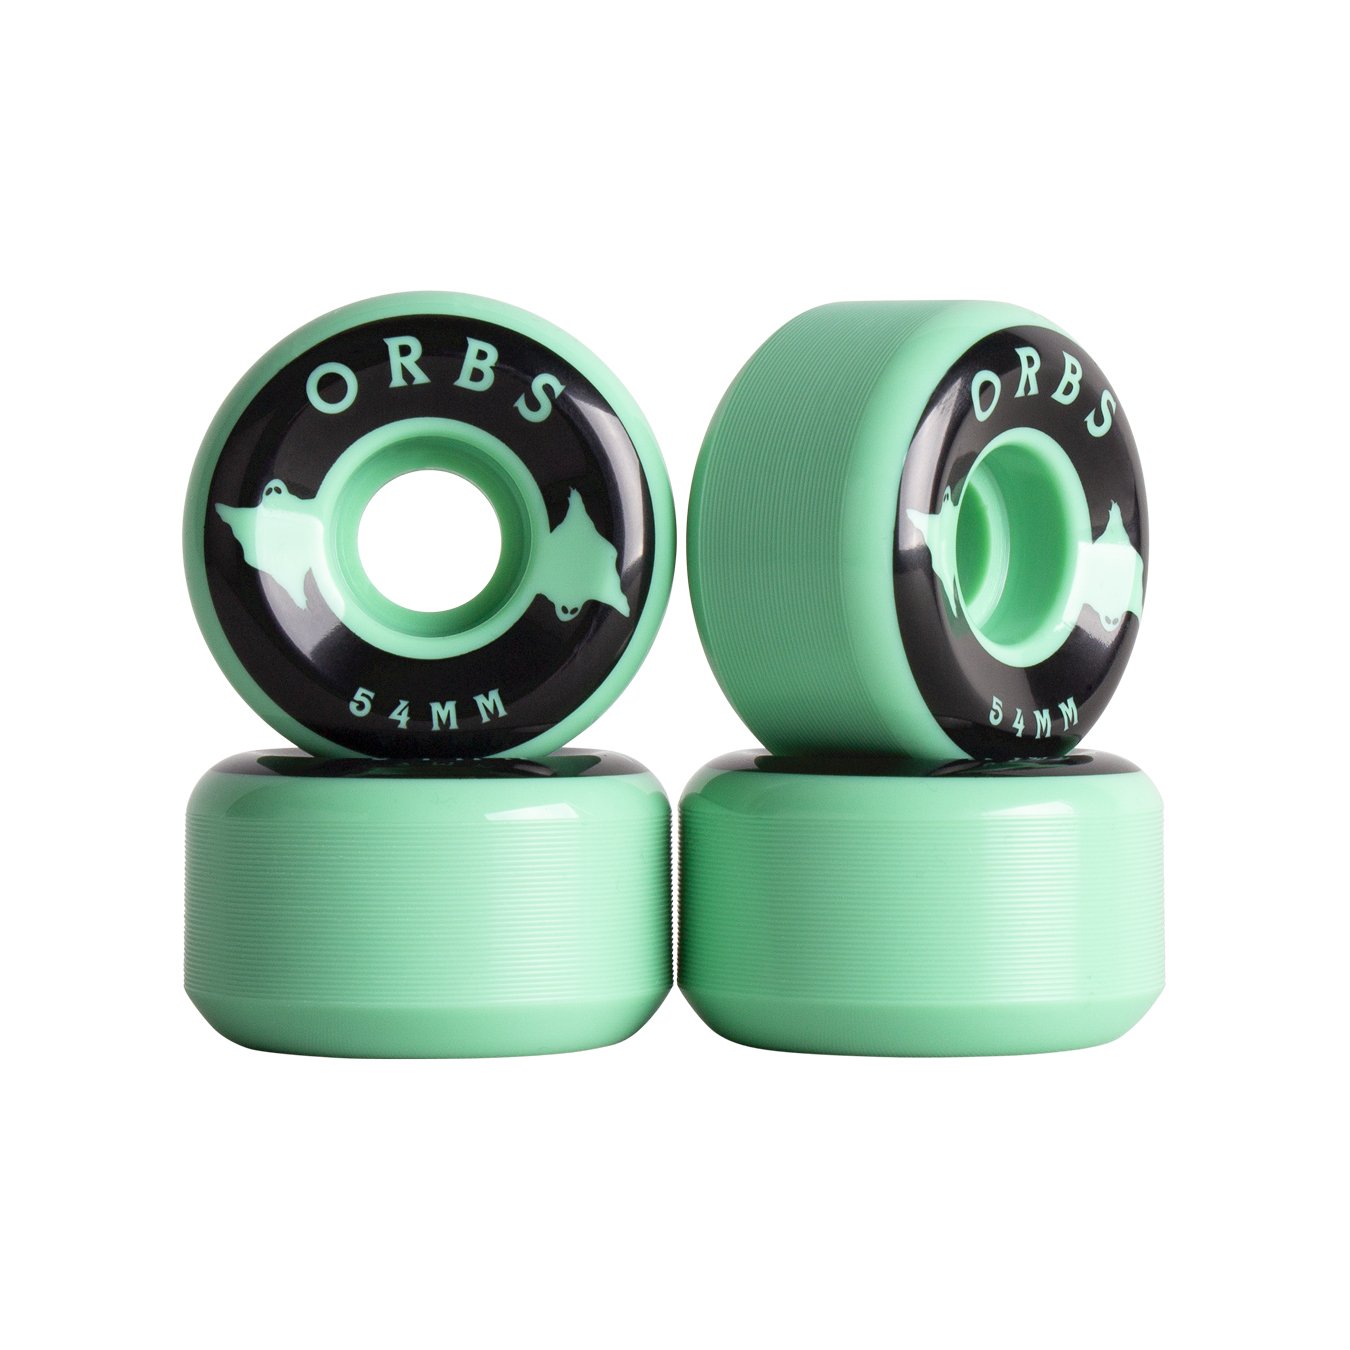 Orbs Specters 99a Mint 54mm Skateboard Wheels